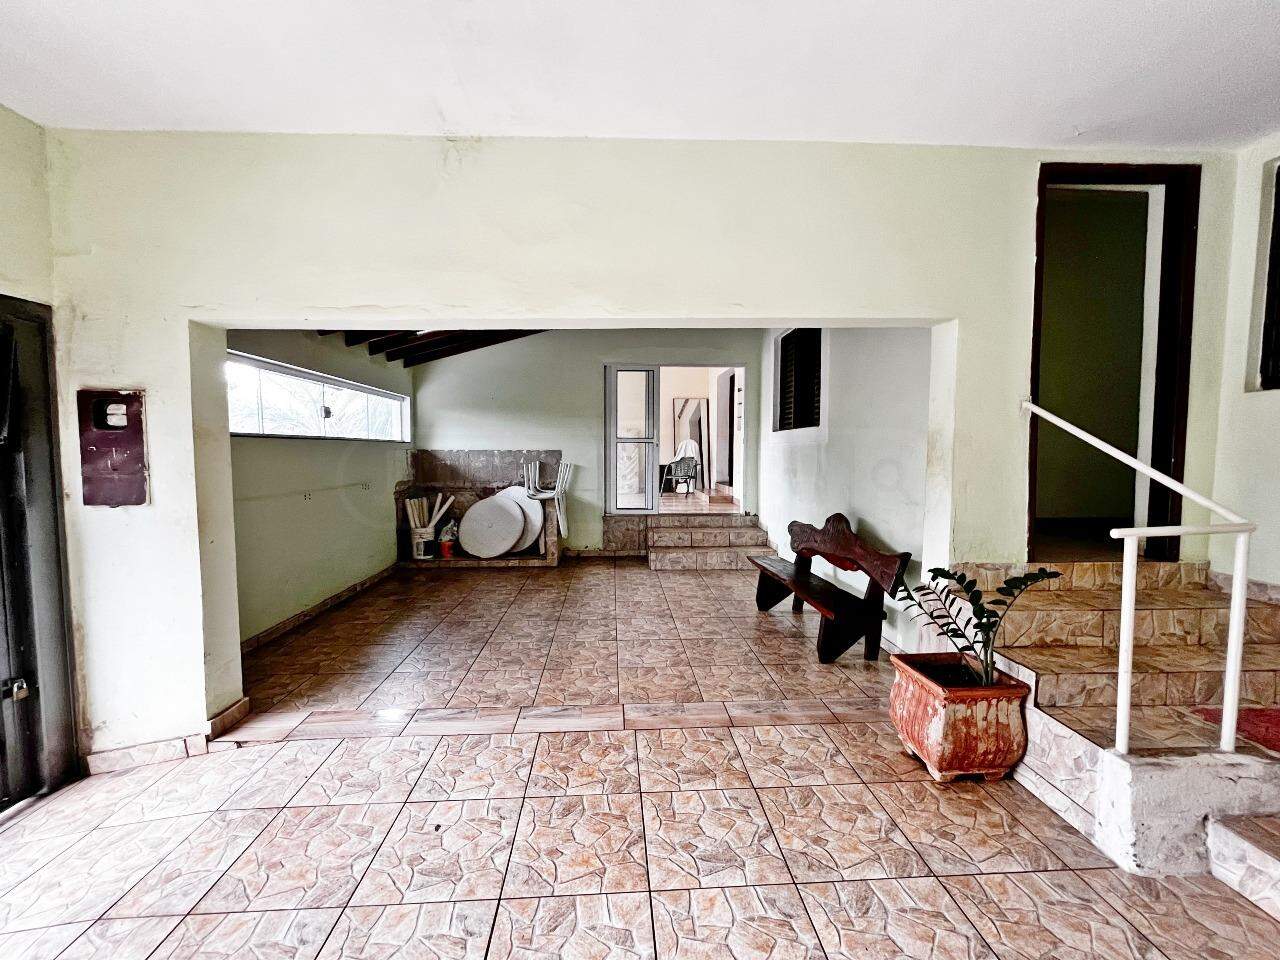 Casa à venda, 4 quartos, 1 vaga, no bairro Santa Rosa em Piracicaba - SP